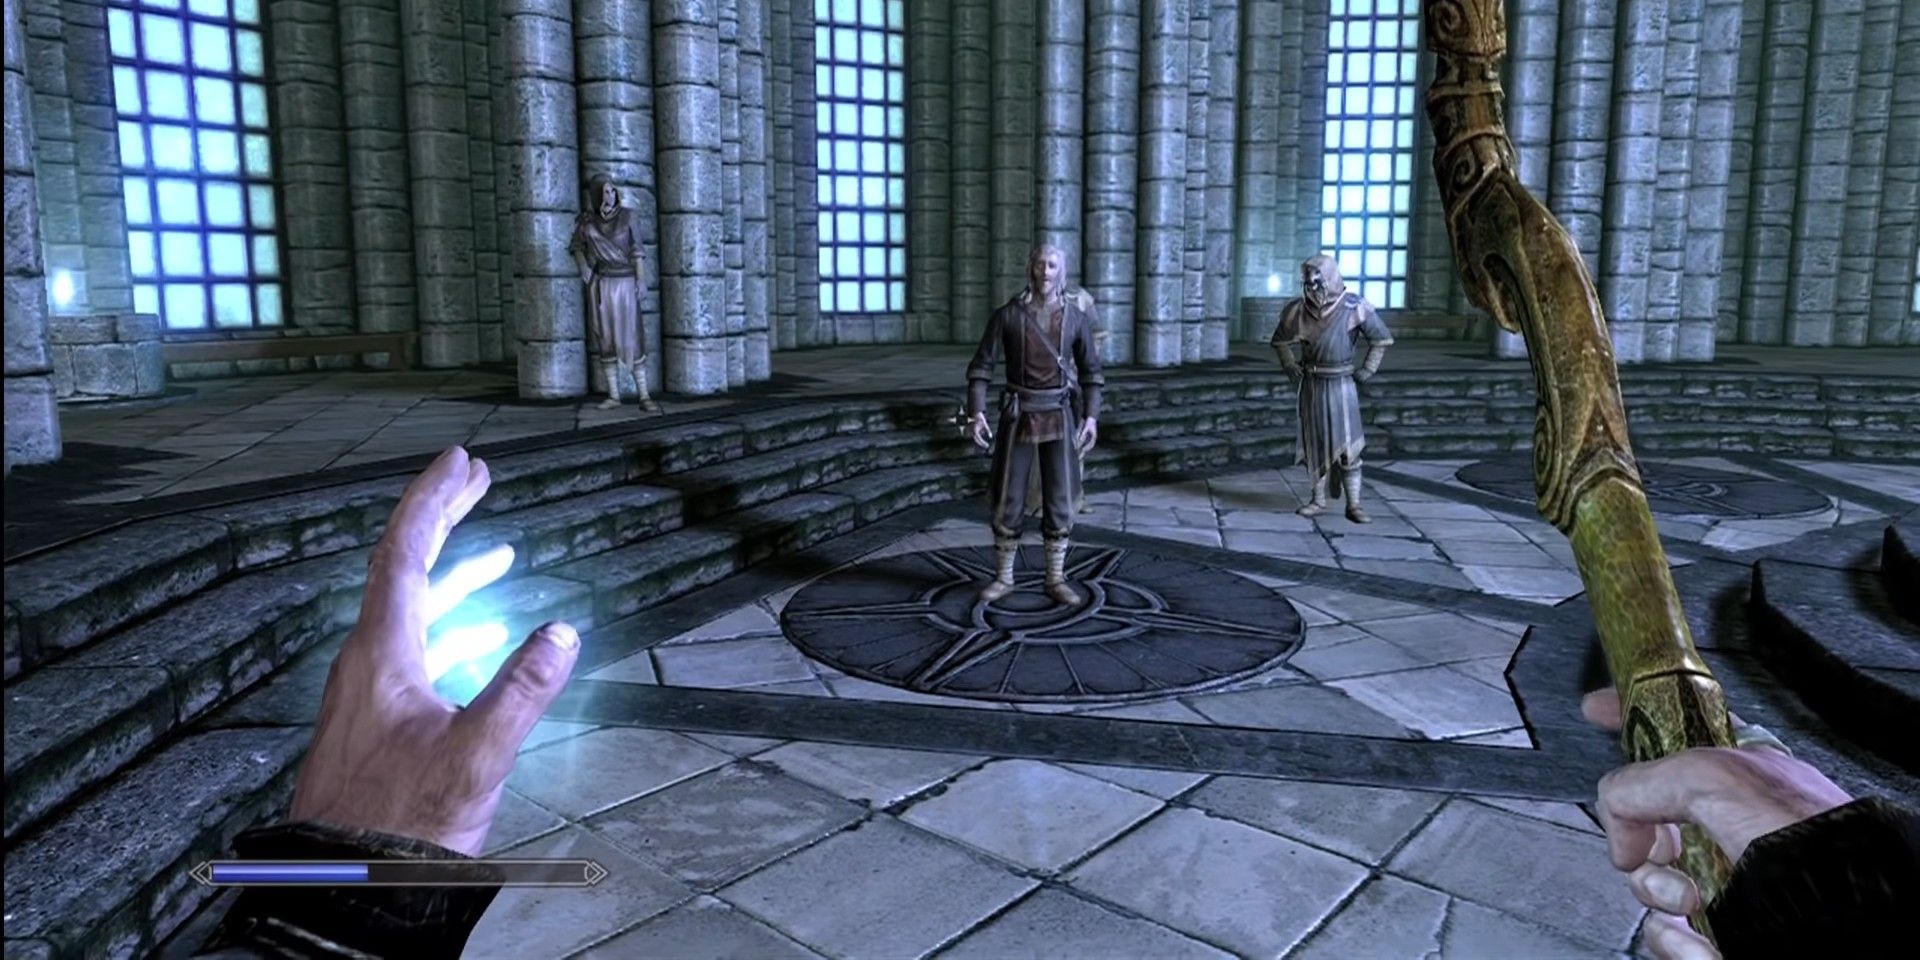 O Colégio de Winterhold de Skyrim atua como a Guilda dos Magos de fato na região.